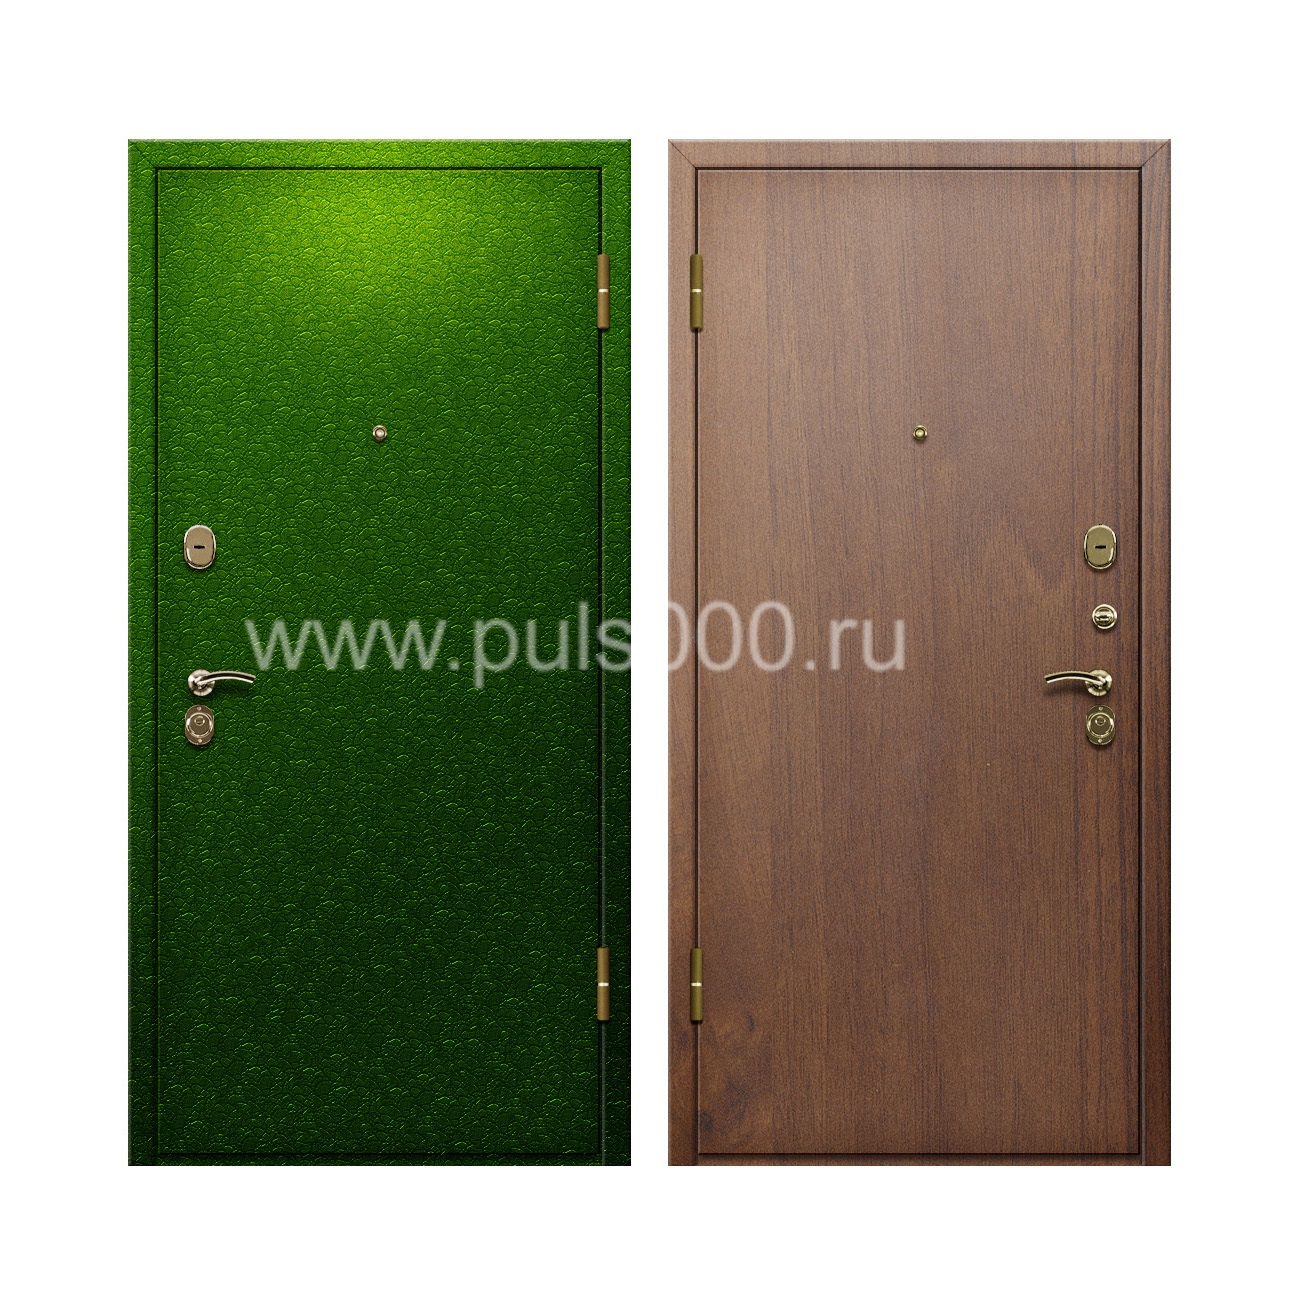 Входная дверь с напылением из порошка и ламинатом внутри PR-66 , цена 20 000  руб.